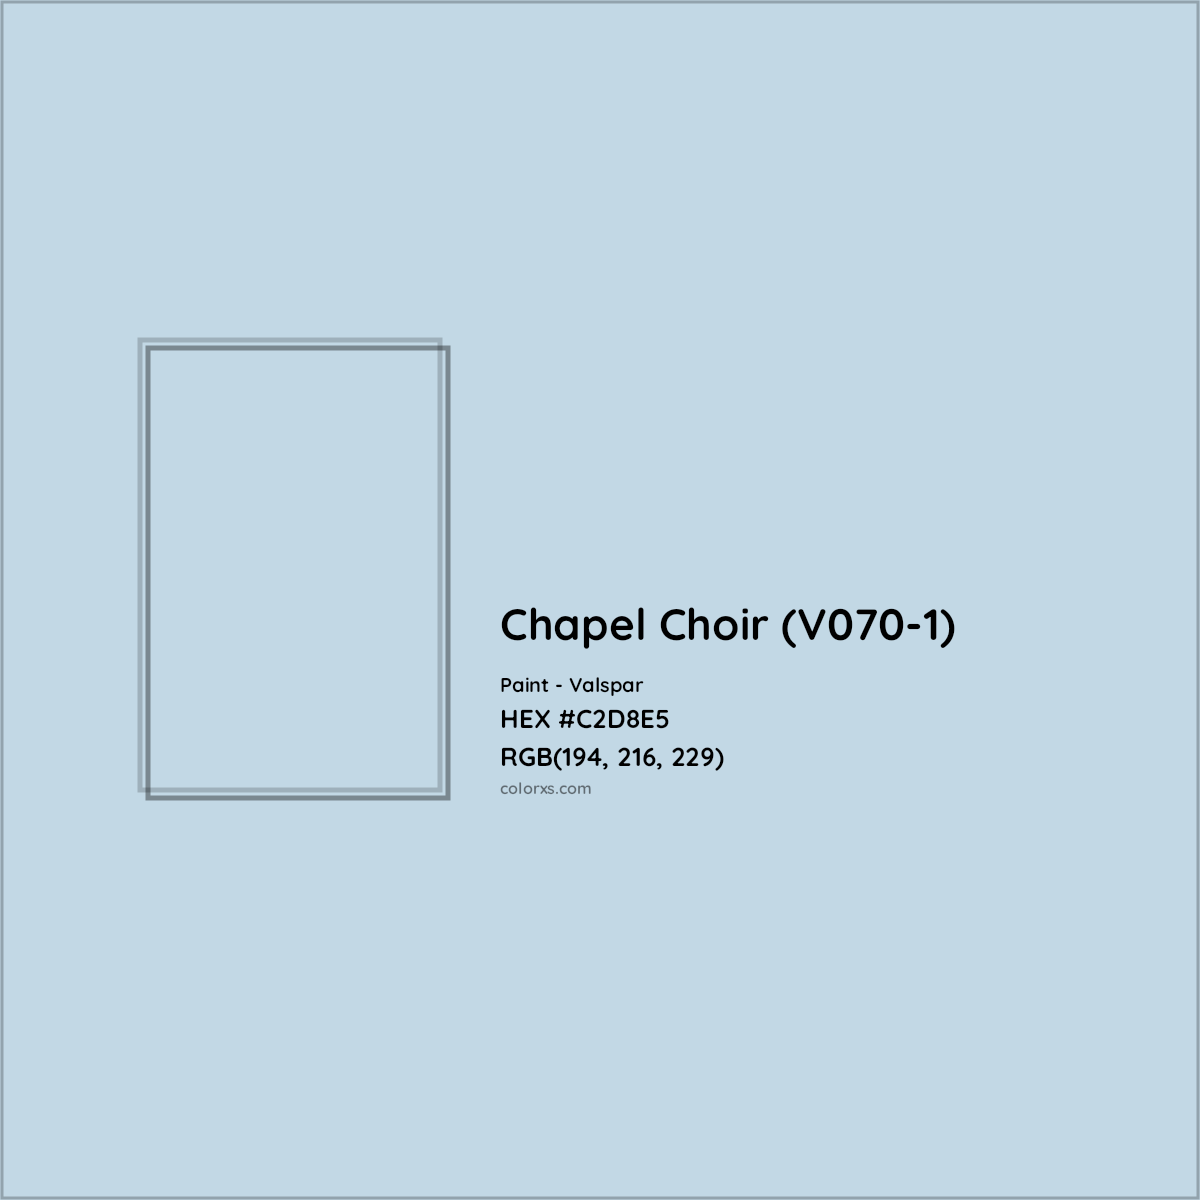 HEX #C2D8E5 Chapel Choir (V070-1) Paint Valspar - Color Code